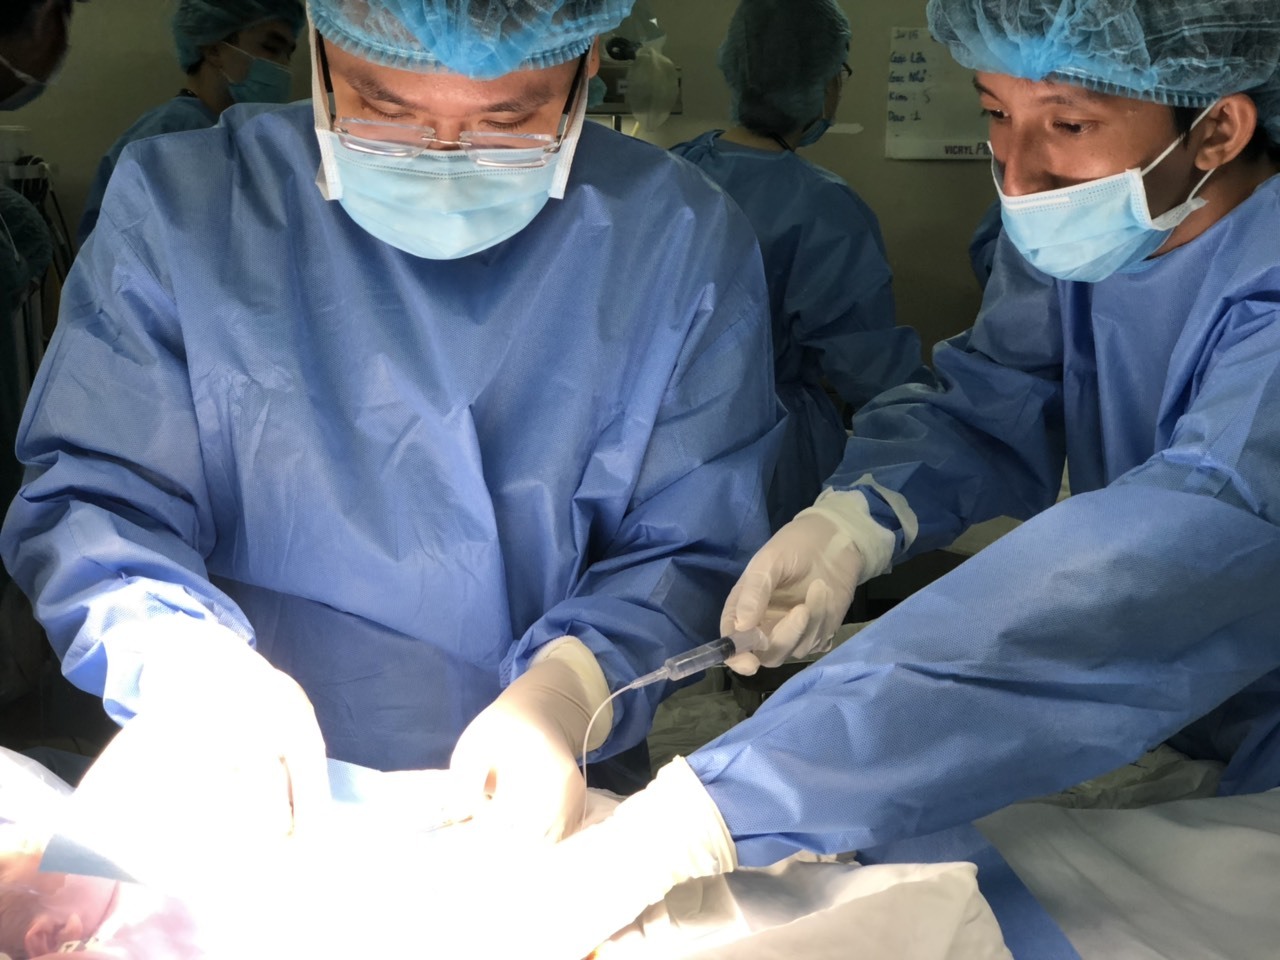 20 bác sĩ mướt mồ hôi đặt máy tạo nhịp tim cho 2 bé song sinh